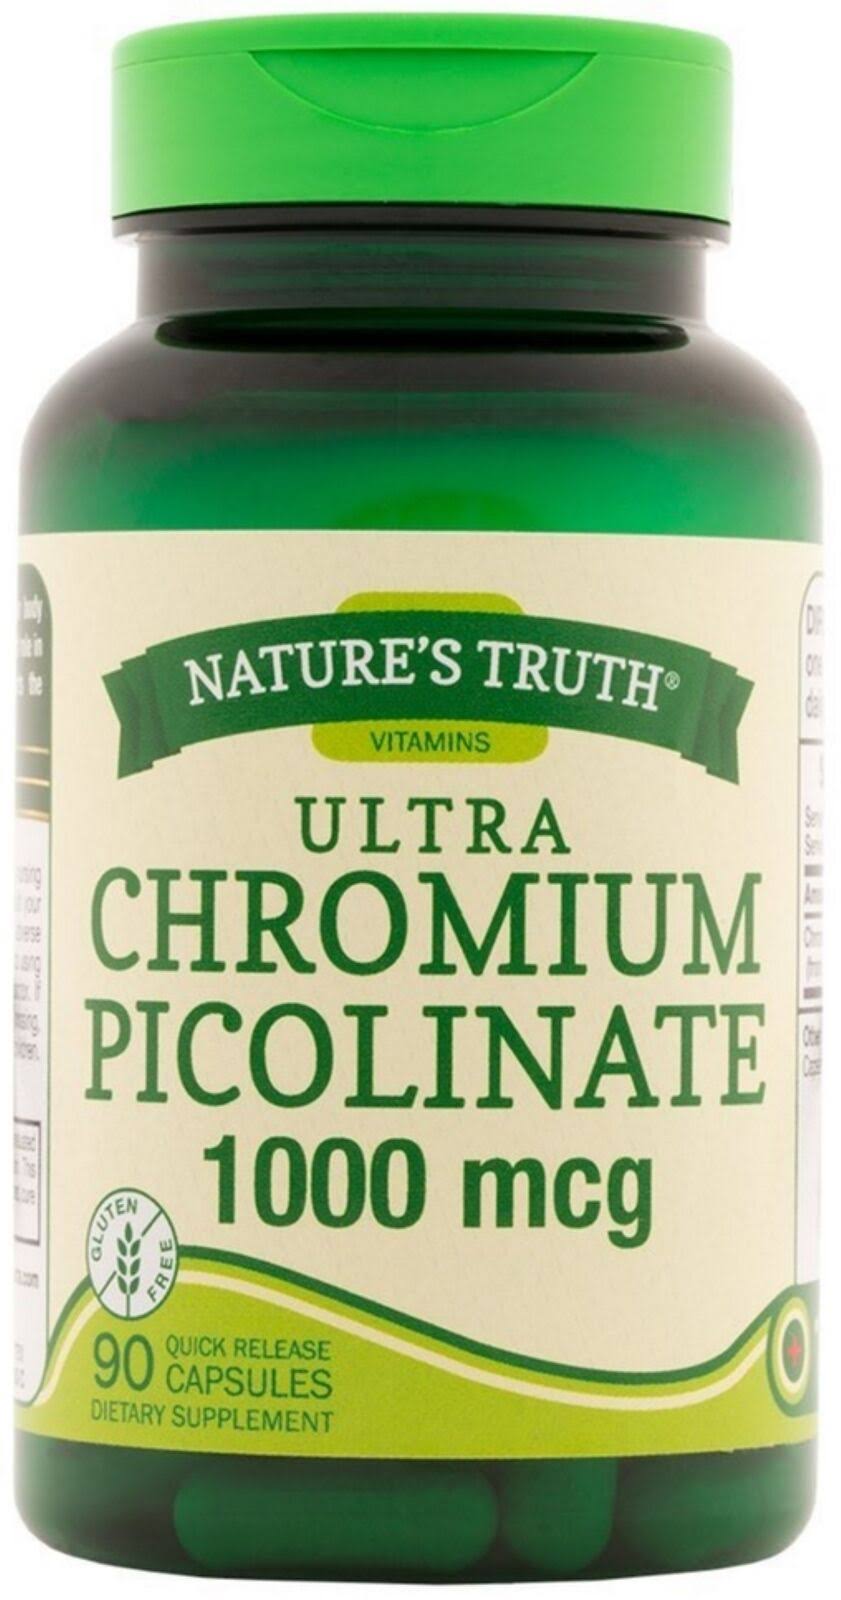 Nature's Truth Chromium Picolinate Dietary Supplement - 1000mcg, 90 Capsules